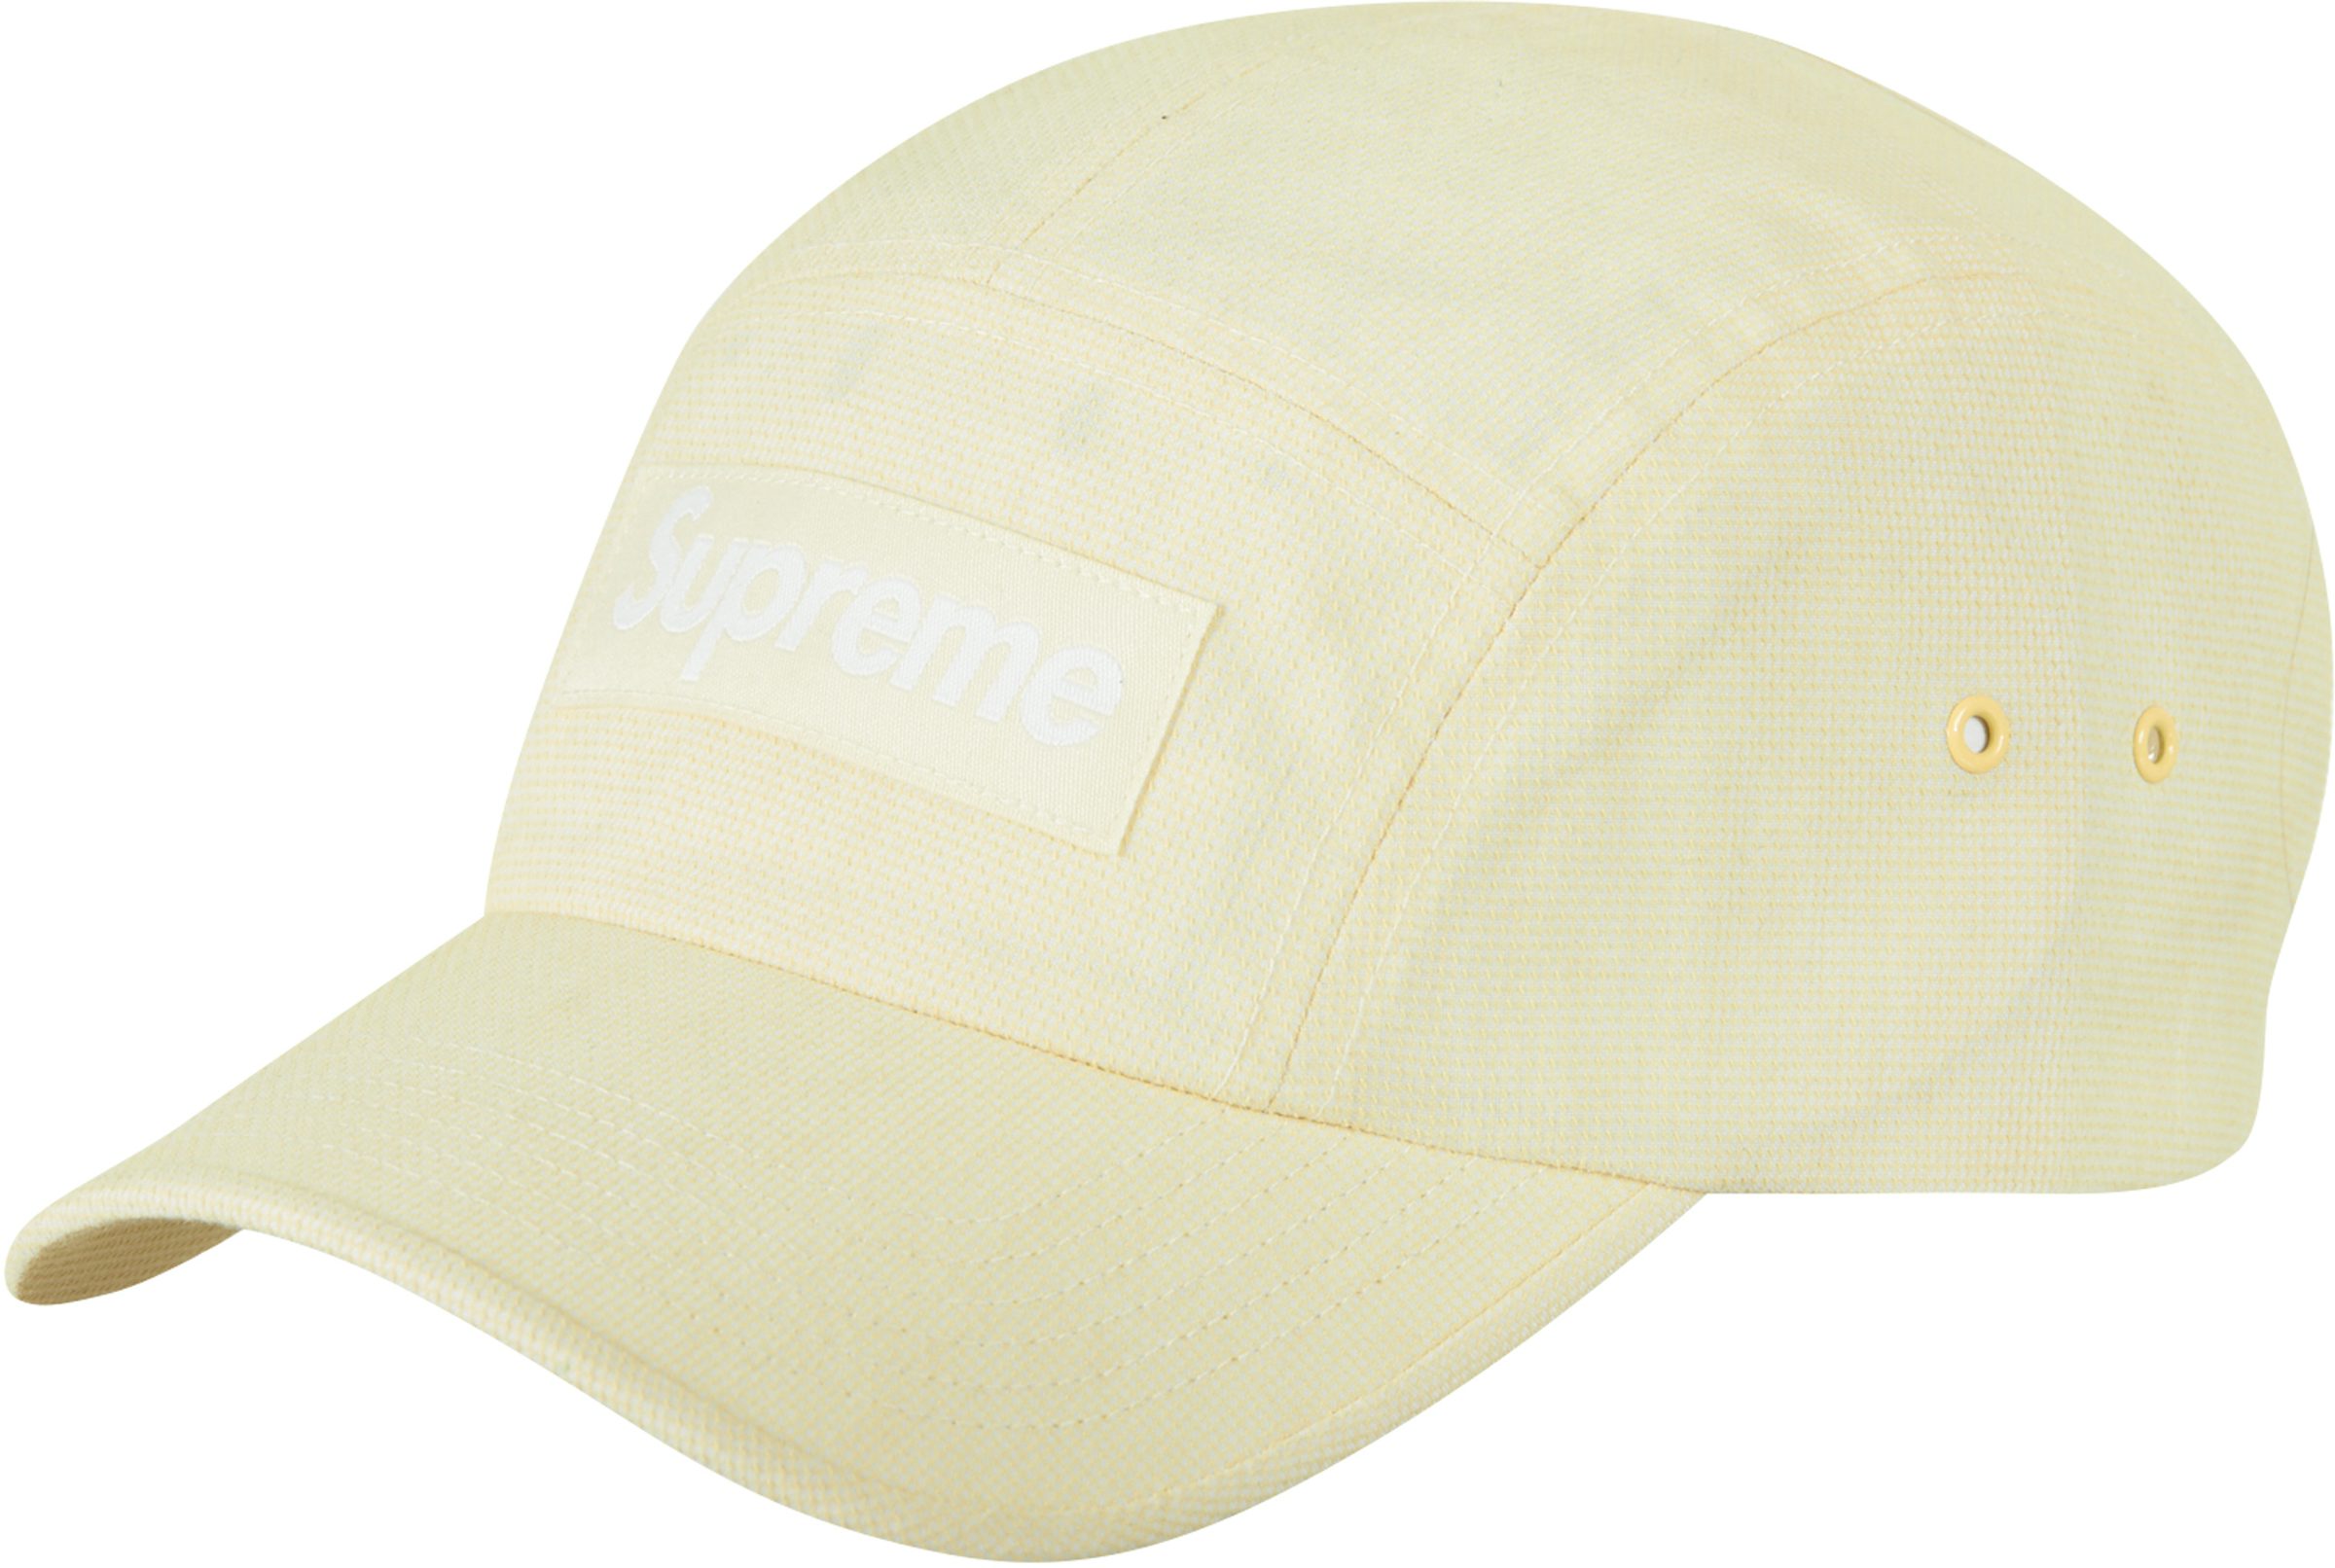 Supreme Ventile Camp Cap (SS23) White